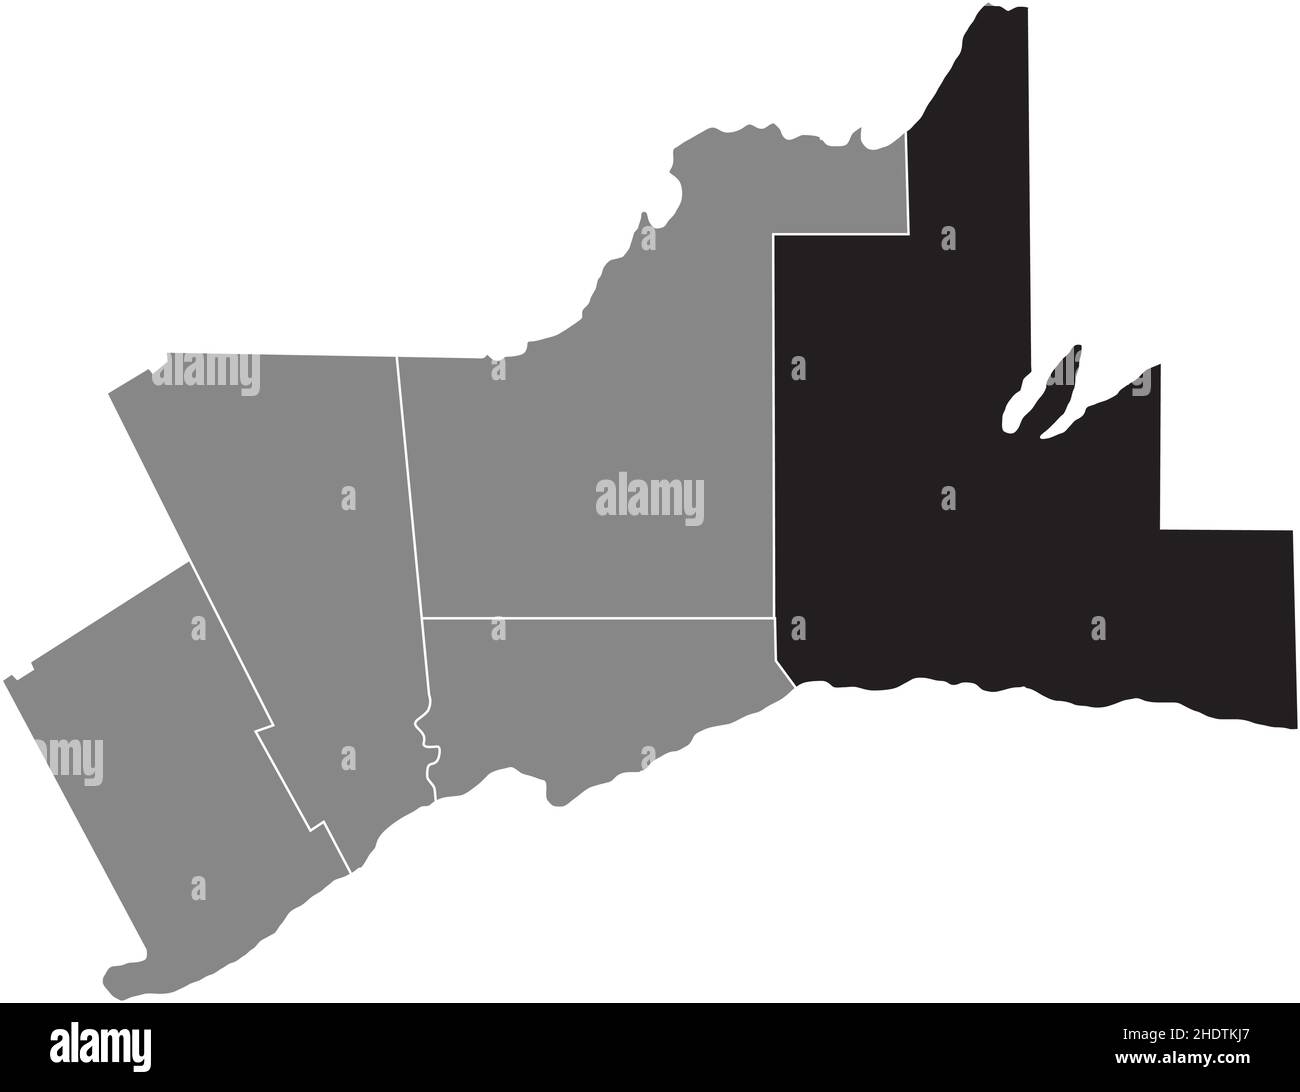 Mapa de localización resaltado en blanco y plano negro de LA REGIÓN DE DURHAM dentro del mapa administrativo gris del área metropolitana de Toronto Ilustración del Vector